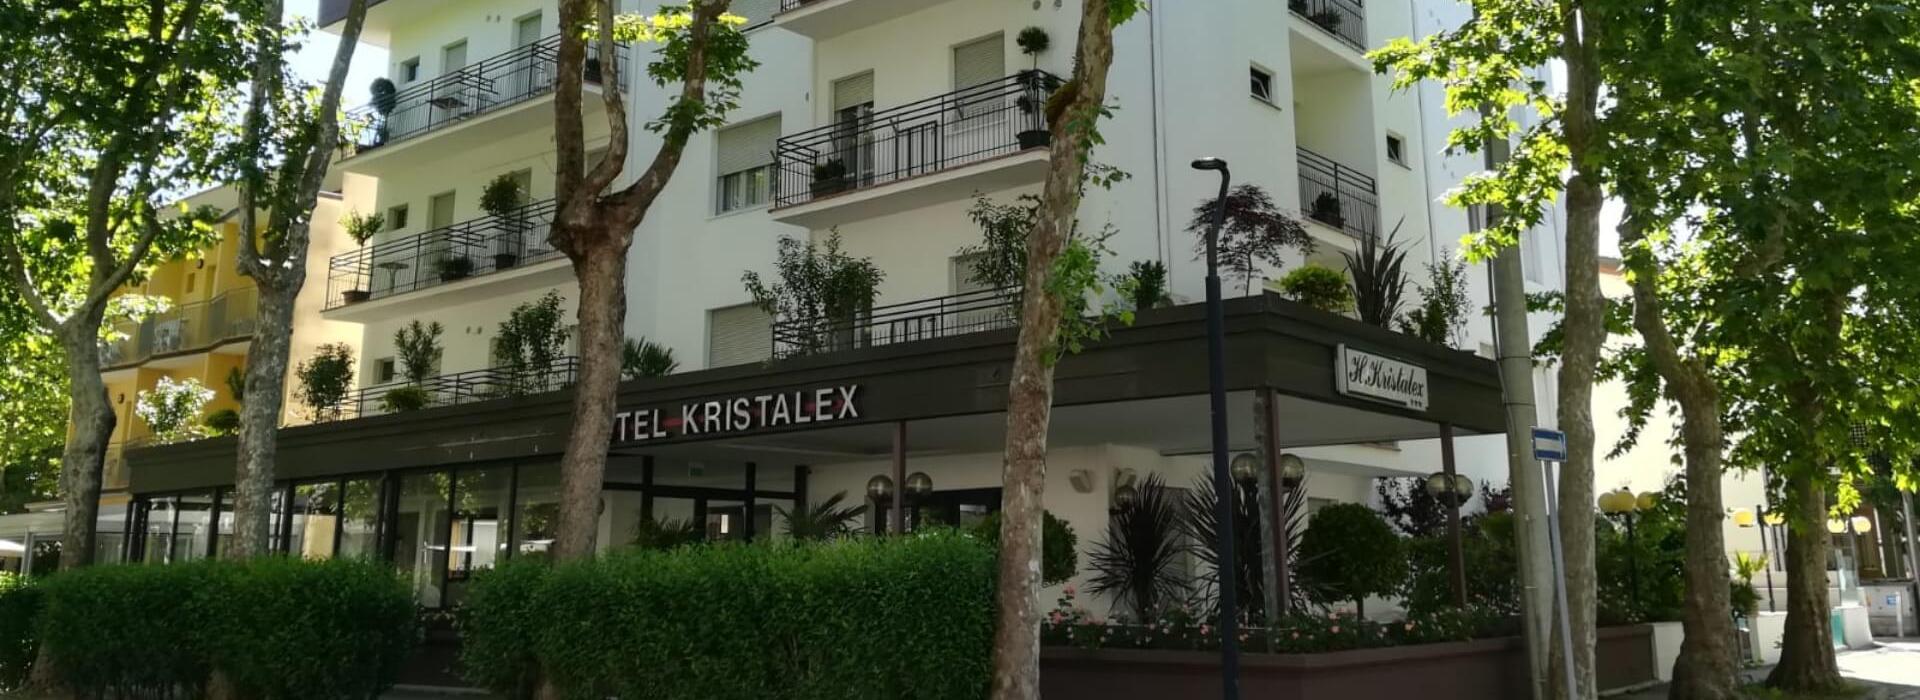 hotelkristalex de ende-juli-und-anfang-august-sonderangebot-fuer-paare-am-strand-im-hotel-in-cesenatico 017